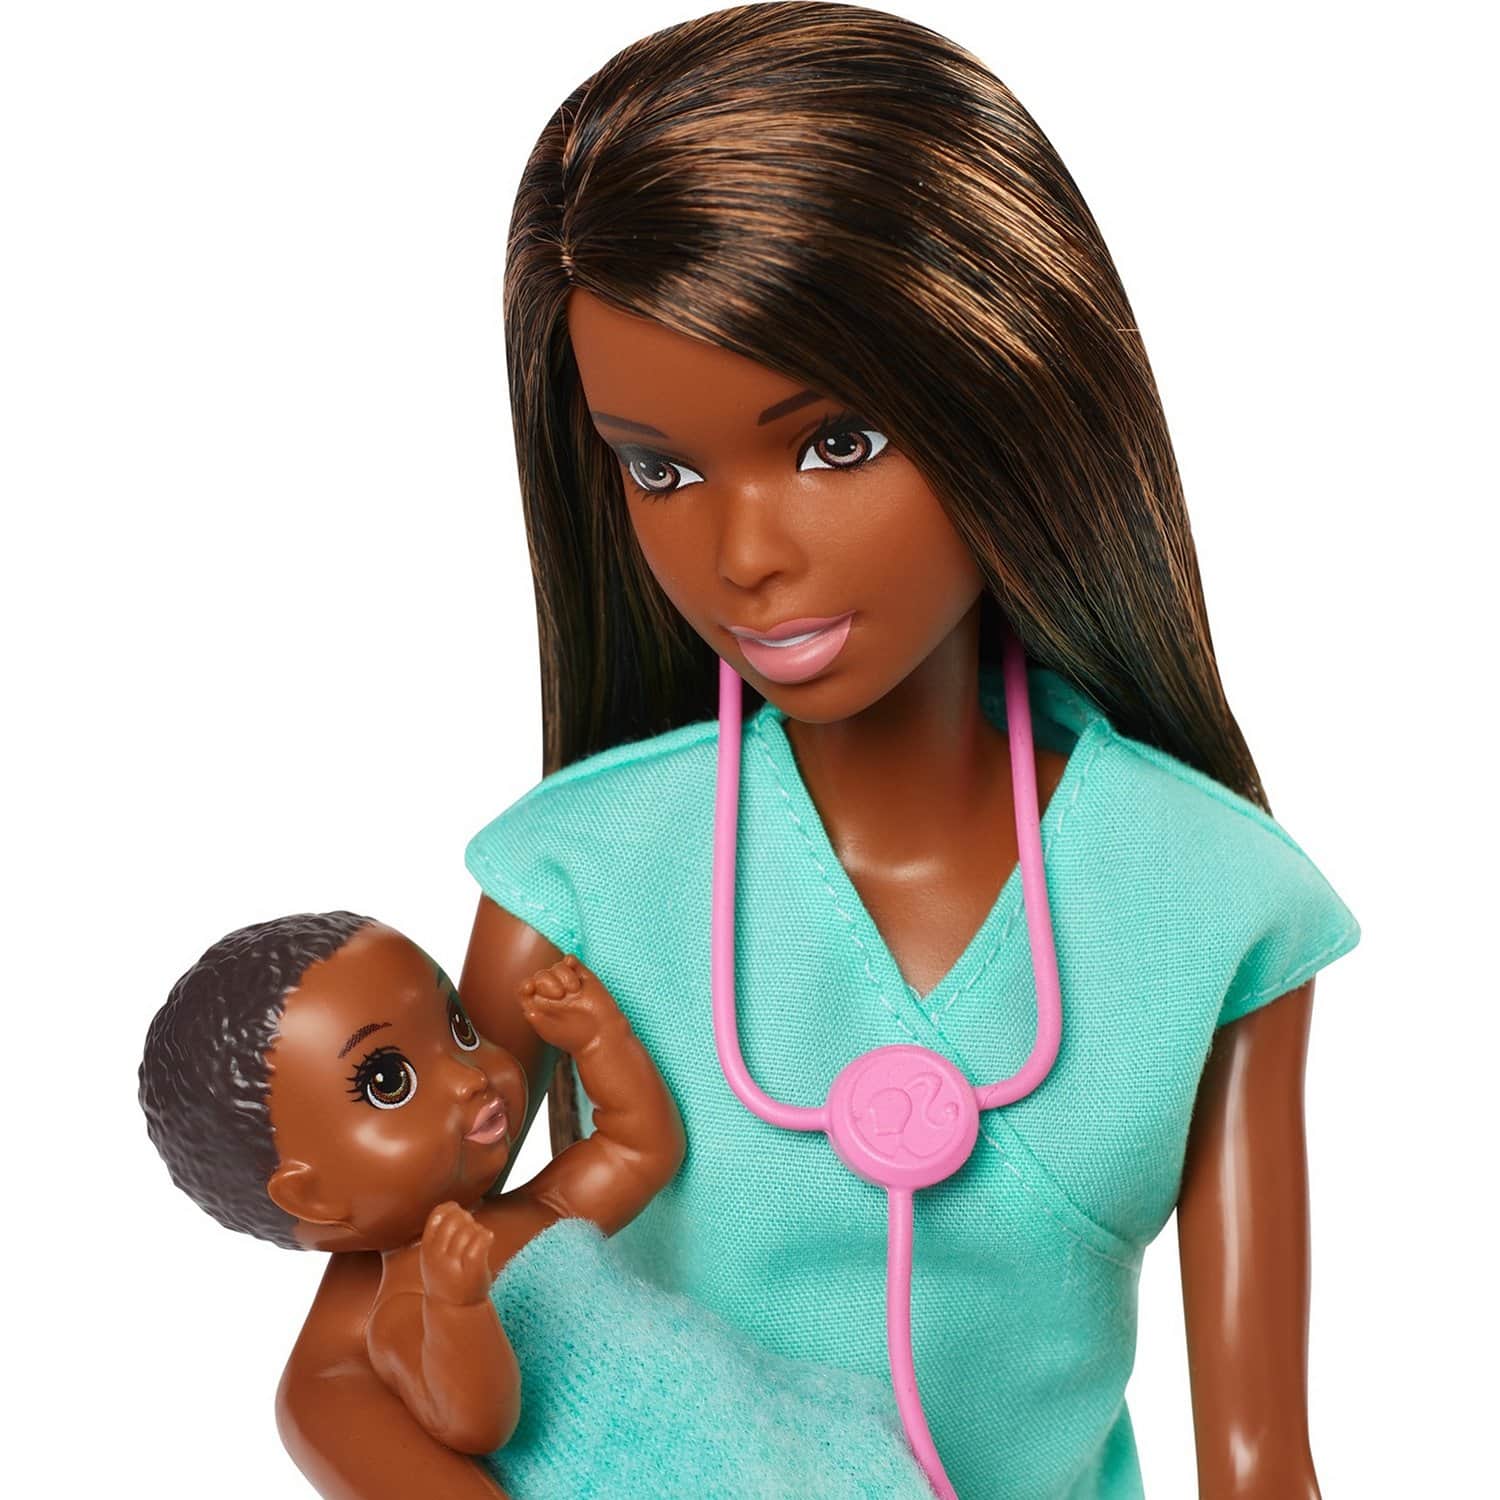 Набор игровой Barbie "Кем быть?" Детский доктор Брюнетка GKH24